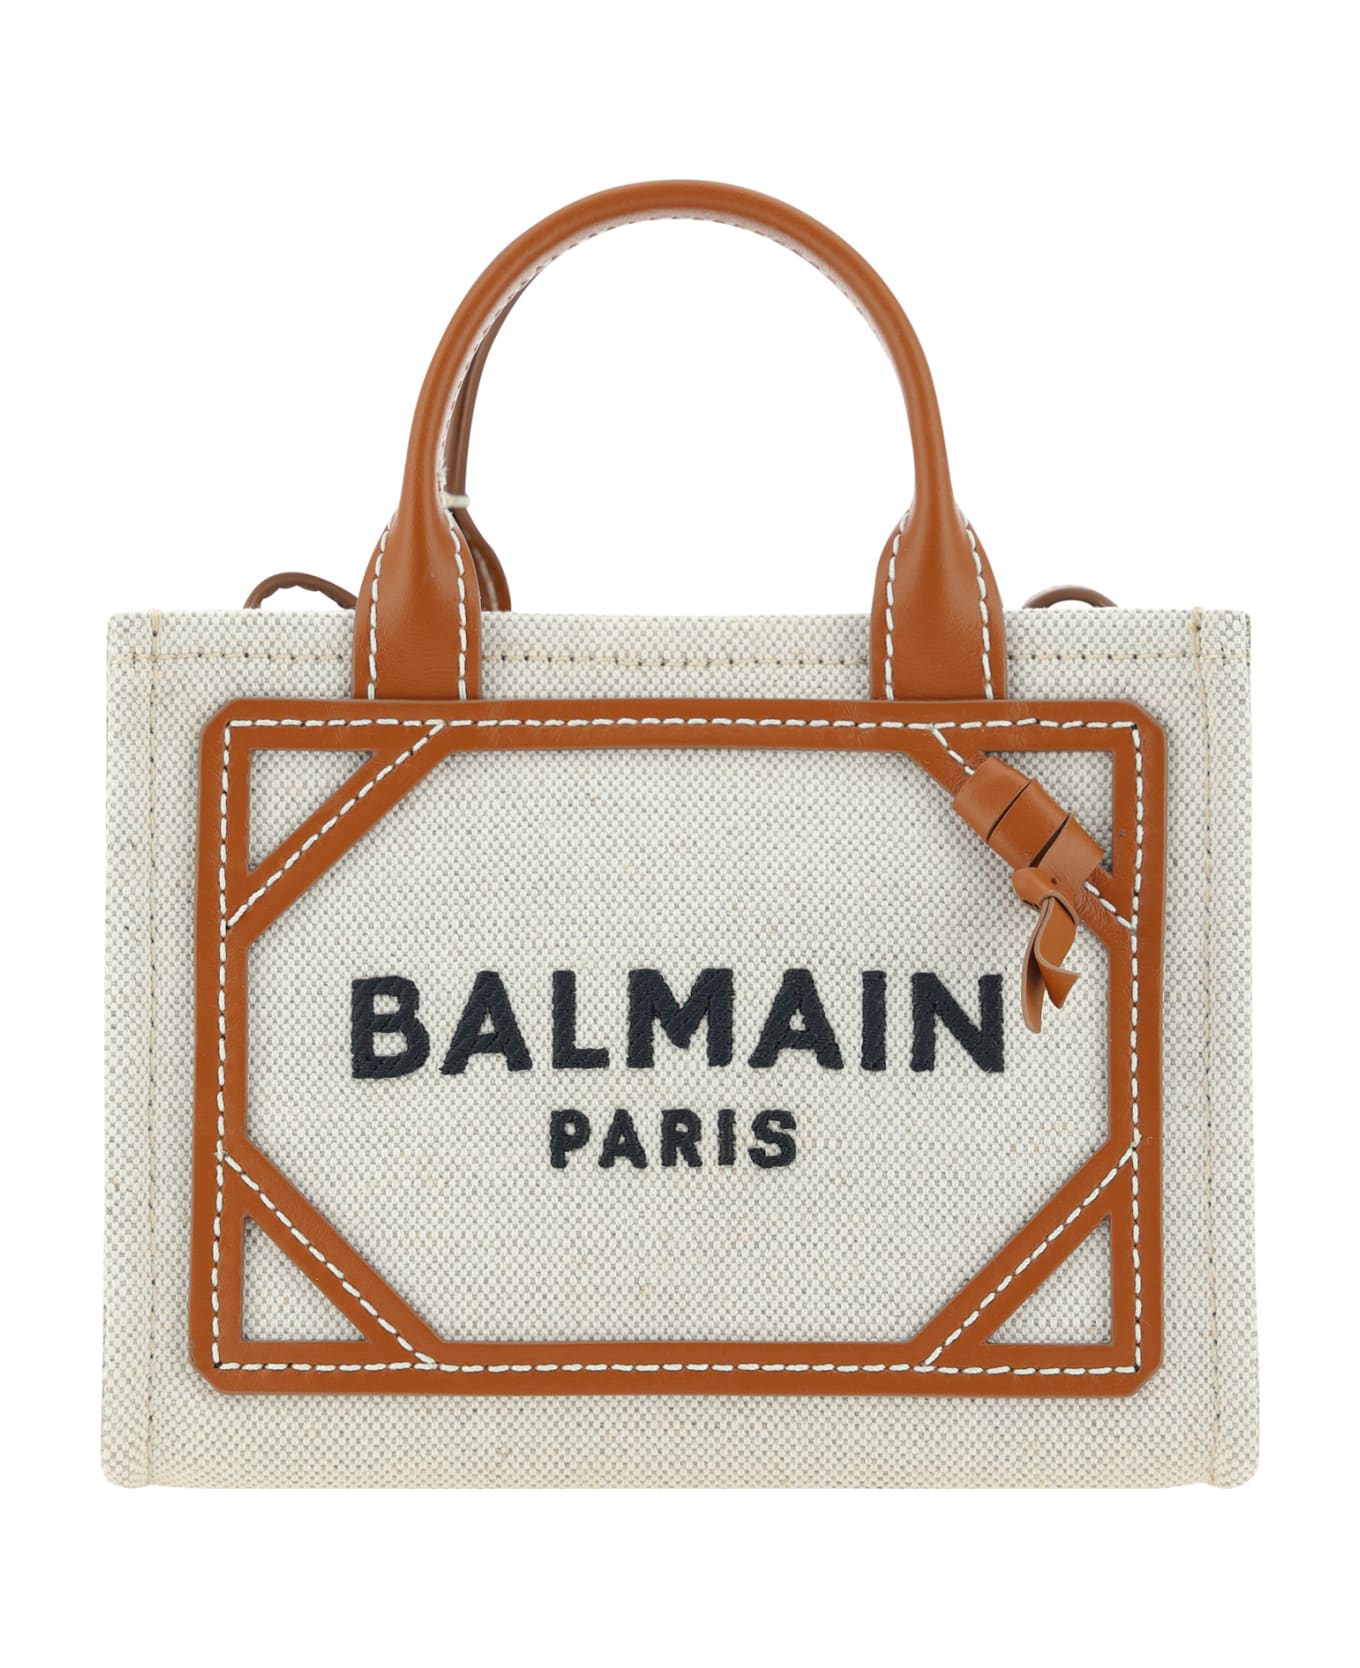 Balmain B-army Handbag - Gem Naturel/marron